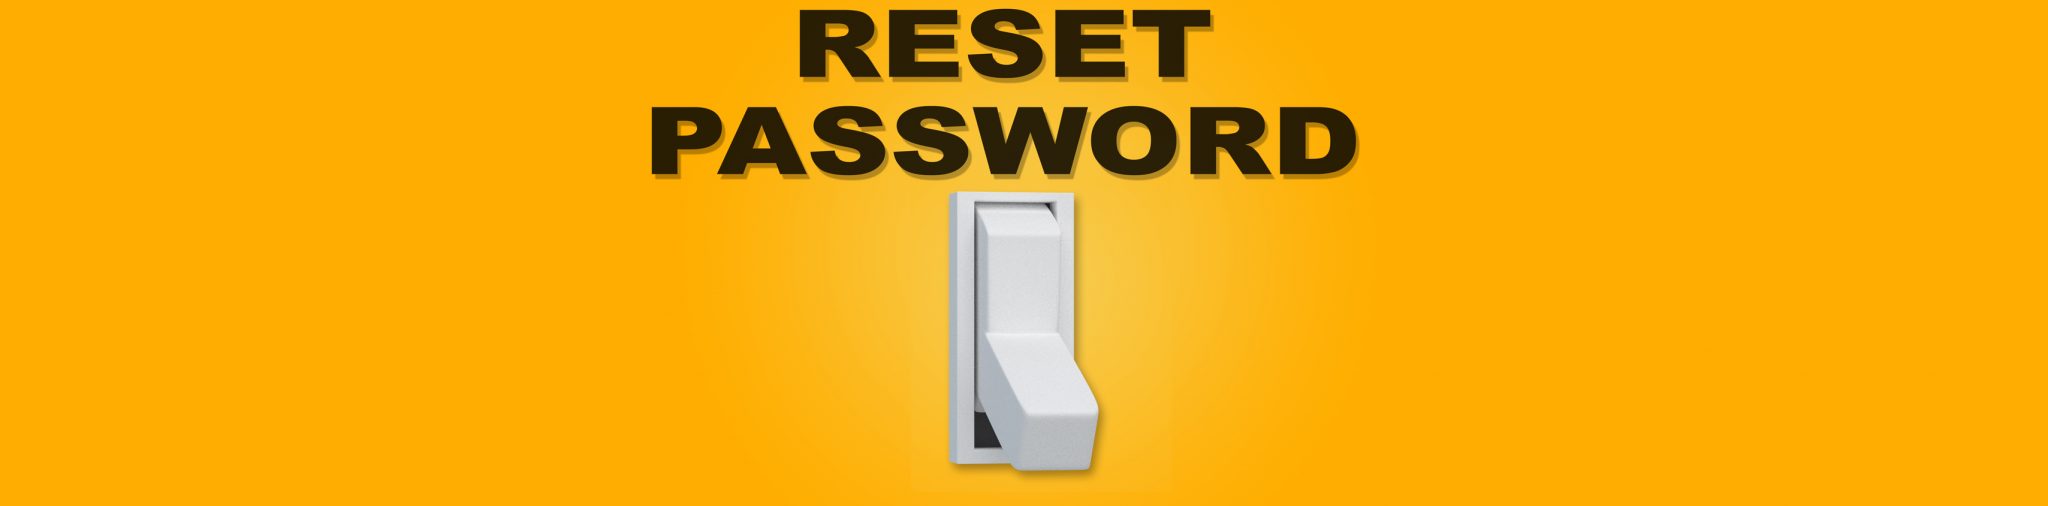 Password here. Active reset.